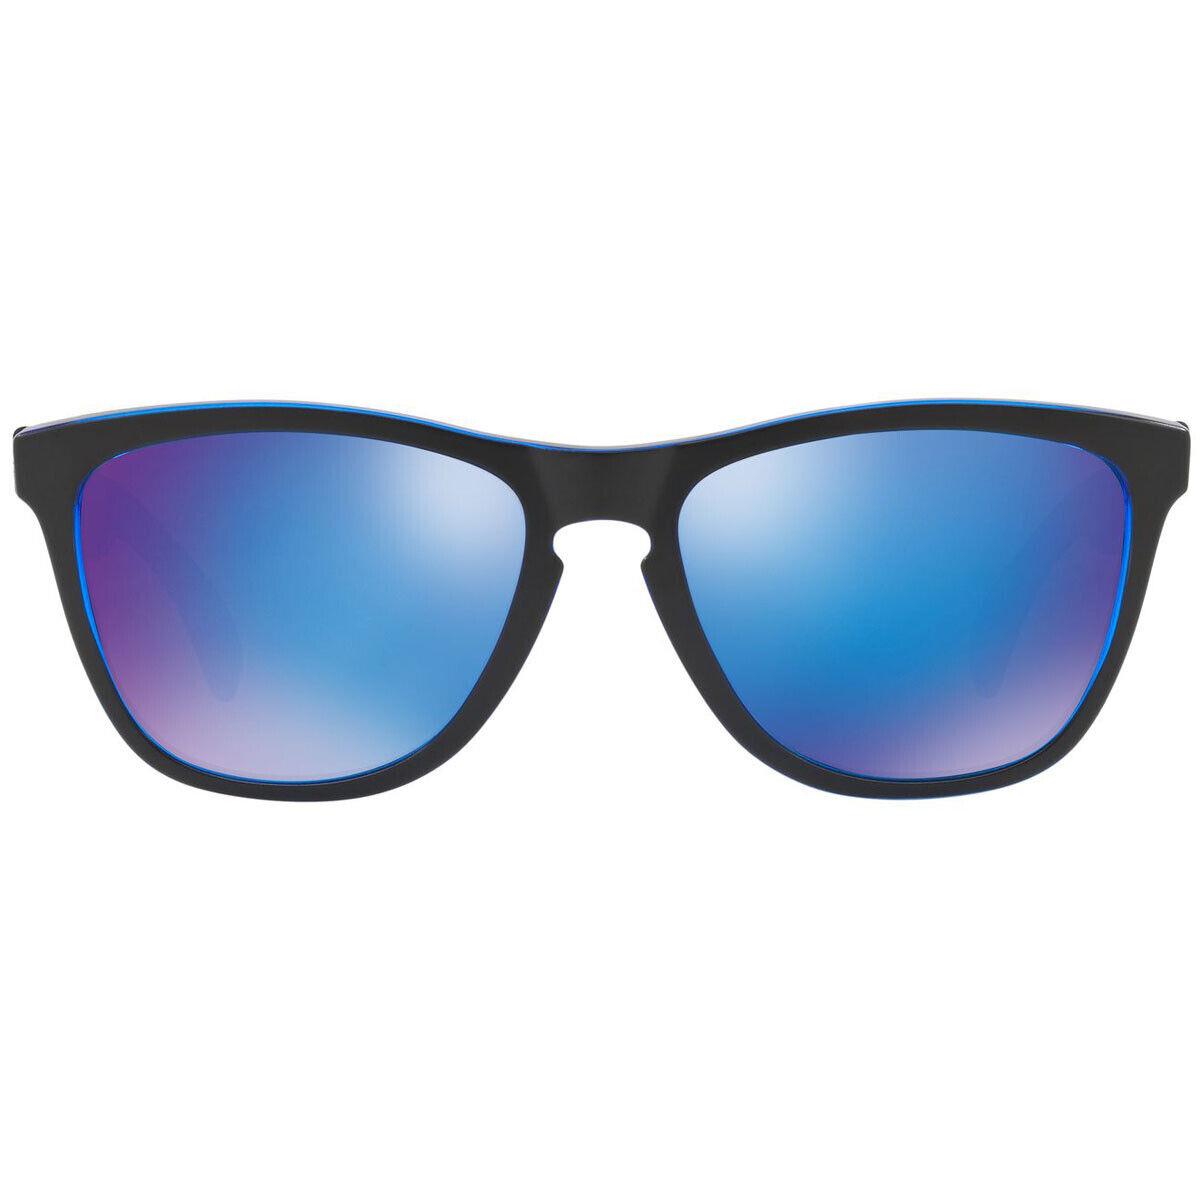 Oakley sunglasses Frogskins - Frame: Blue, Lens: Blue 1